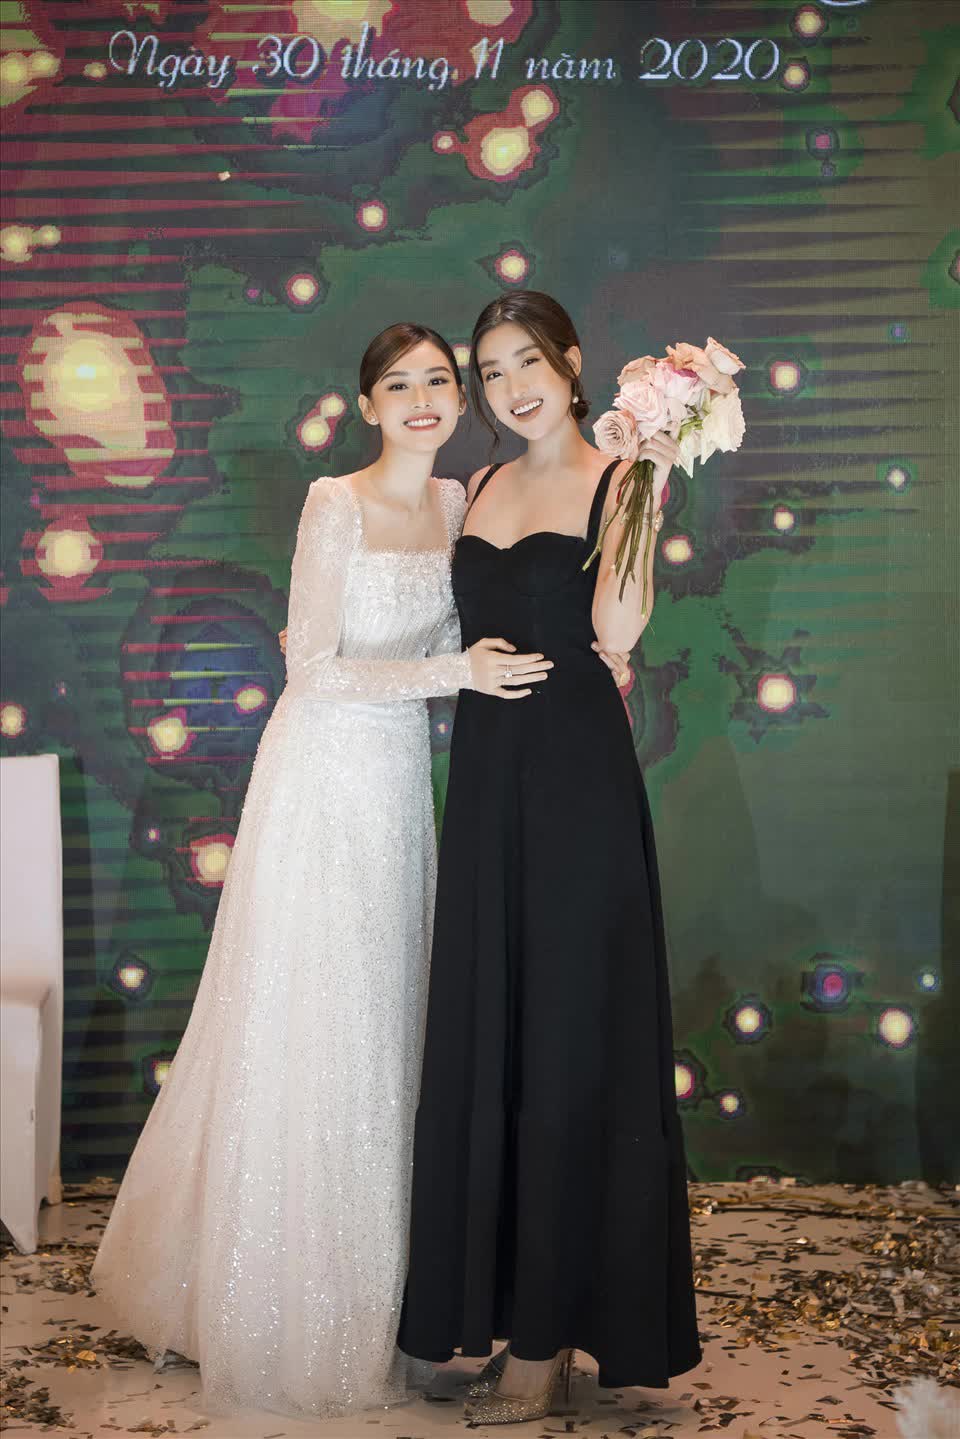 4 sao Việt 'chốt đơn' sau khi bắt hoa cưới: Đỗ Mỹ Linh và Ngô Thanh Vân được trao lại, 1 mỹ nhân vừa nhập hội - Ảnh 6.